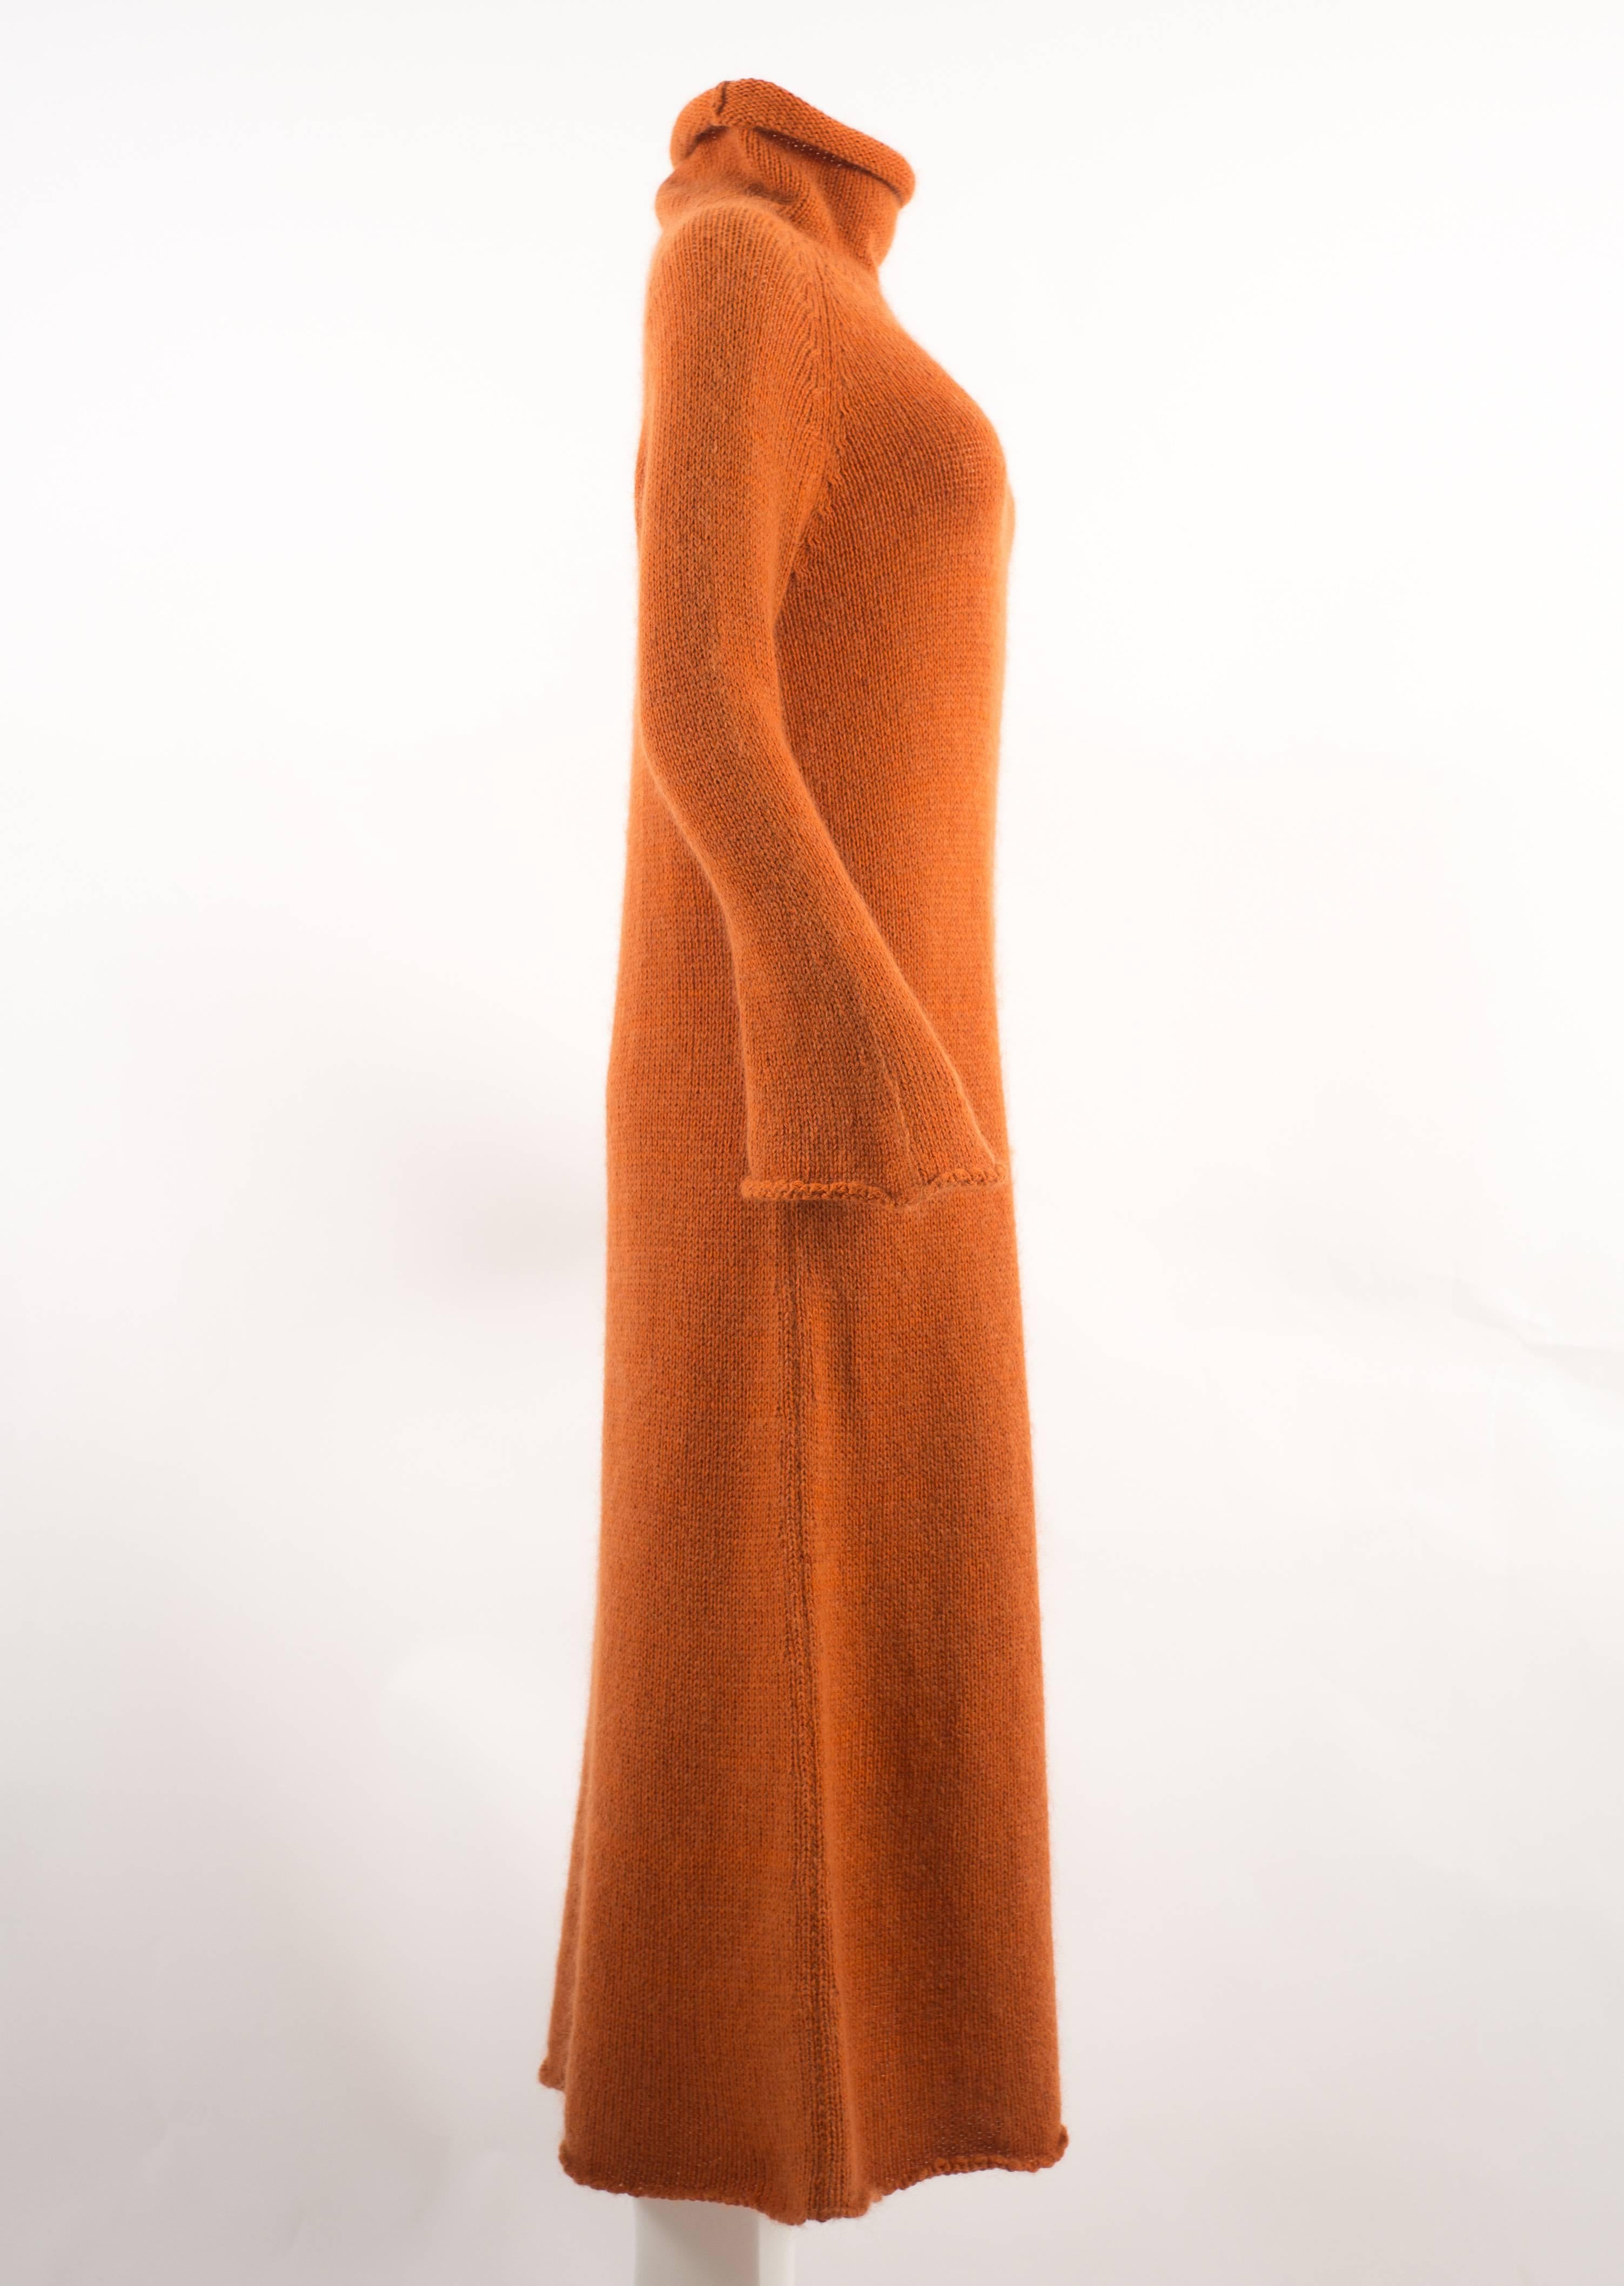 Yohji Yamamoto Autumn-Winter 1998 orange knitted maxi dress 1